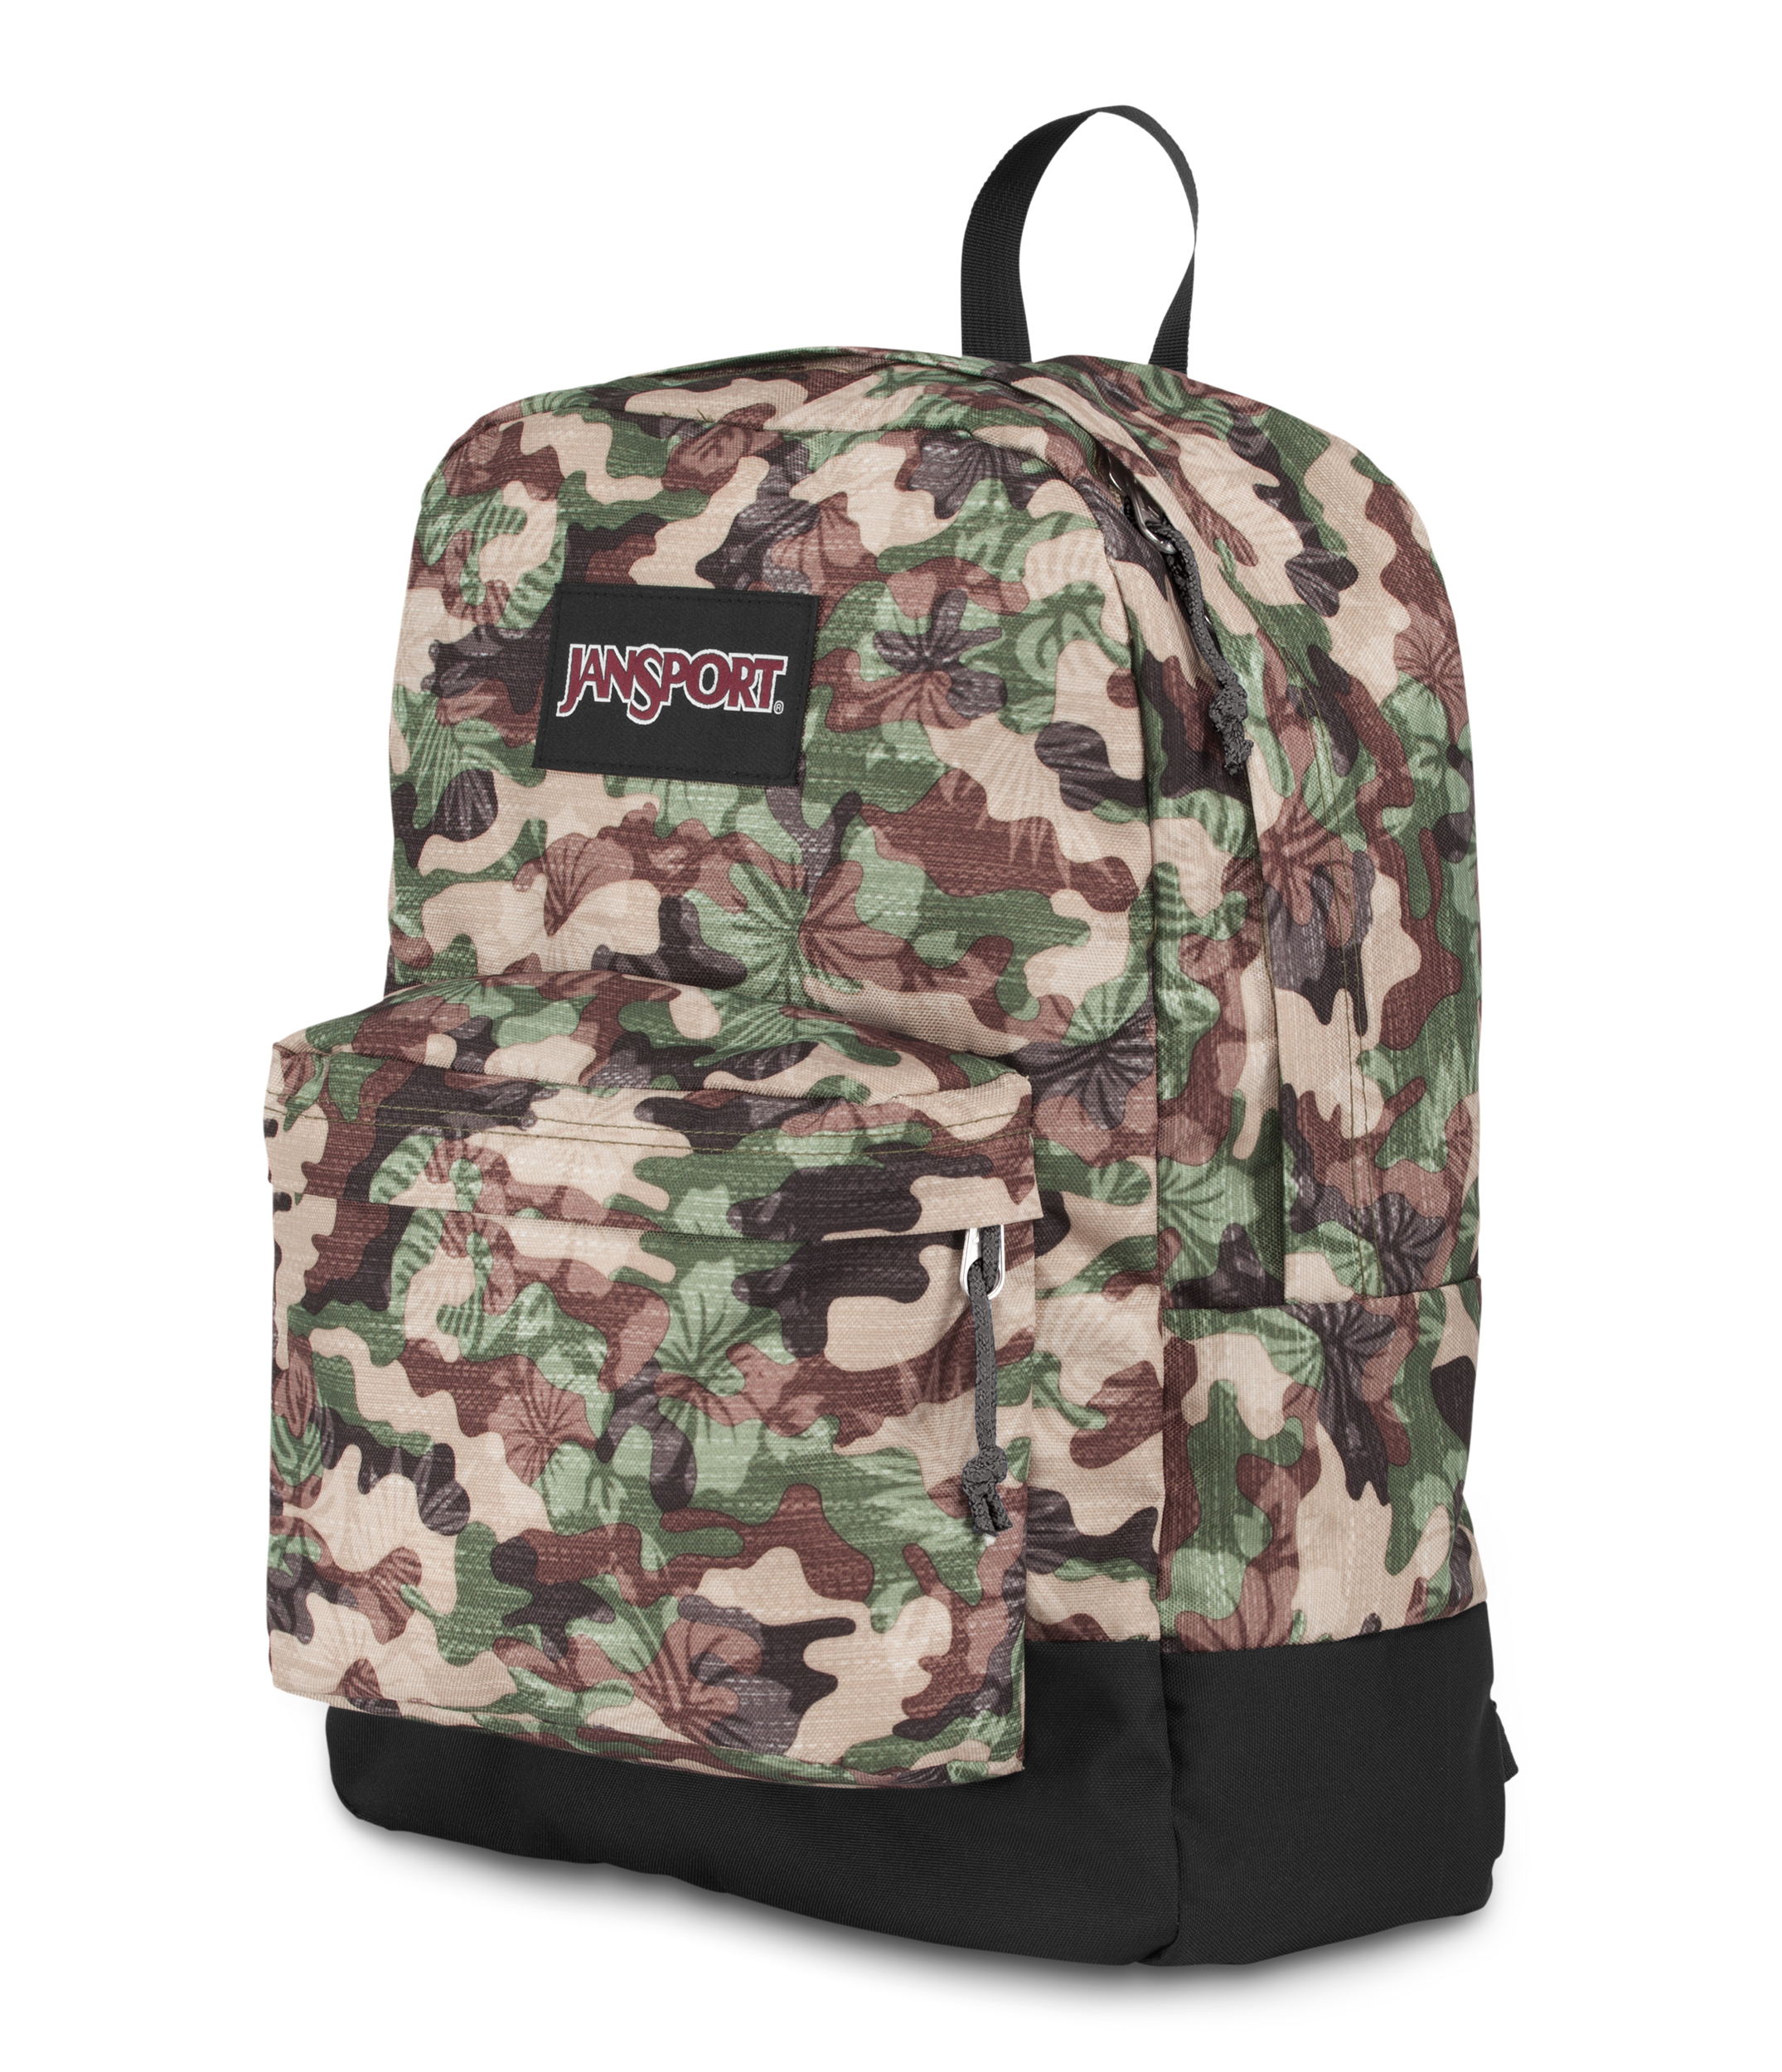 Buy JanSport Black Label Superbreak Backpack (Multi Floral Camo) Online ...